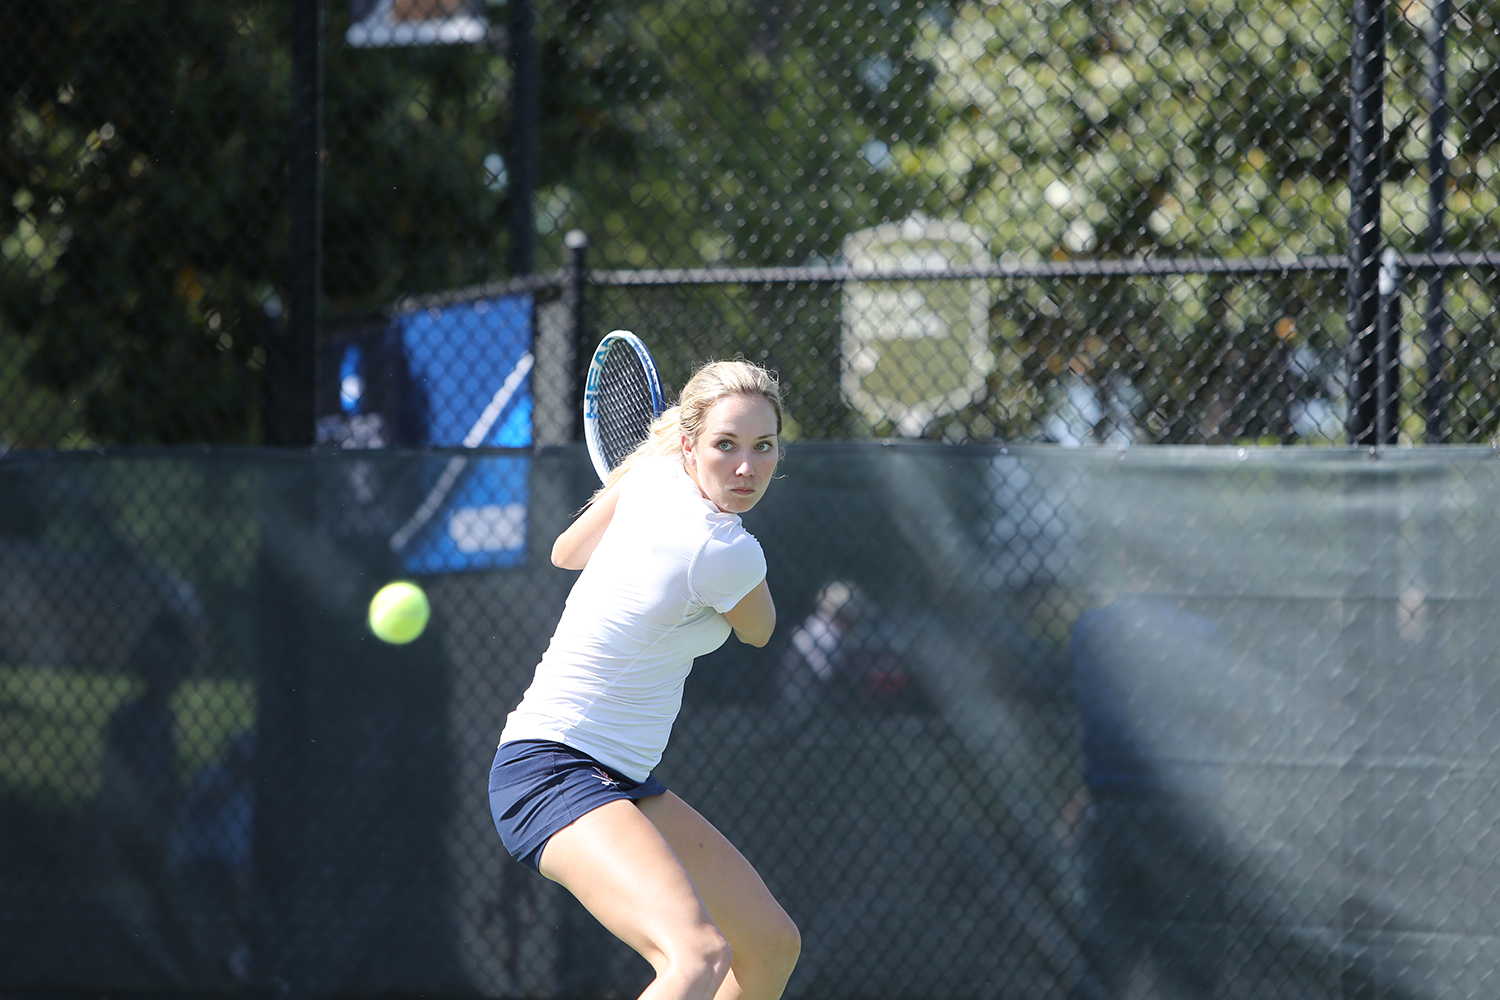 Danielle Collins hitting a tennis ball